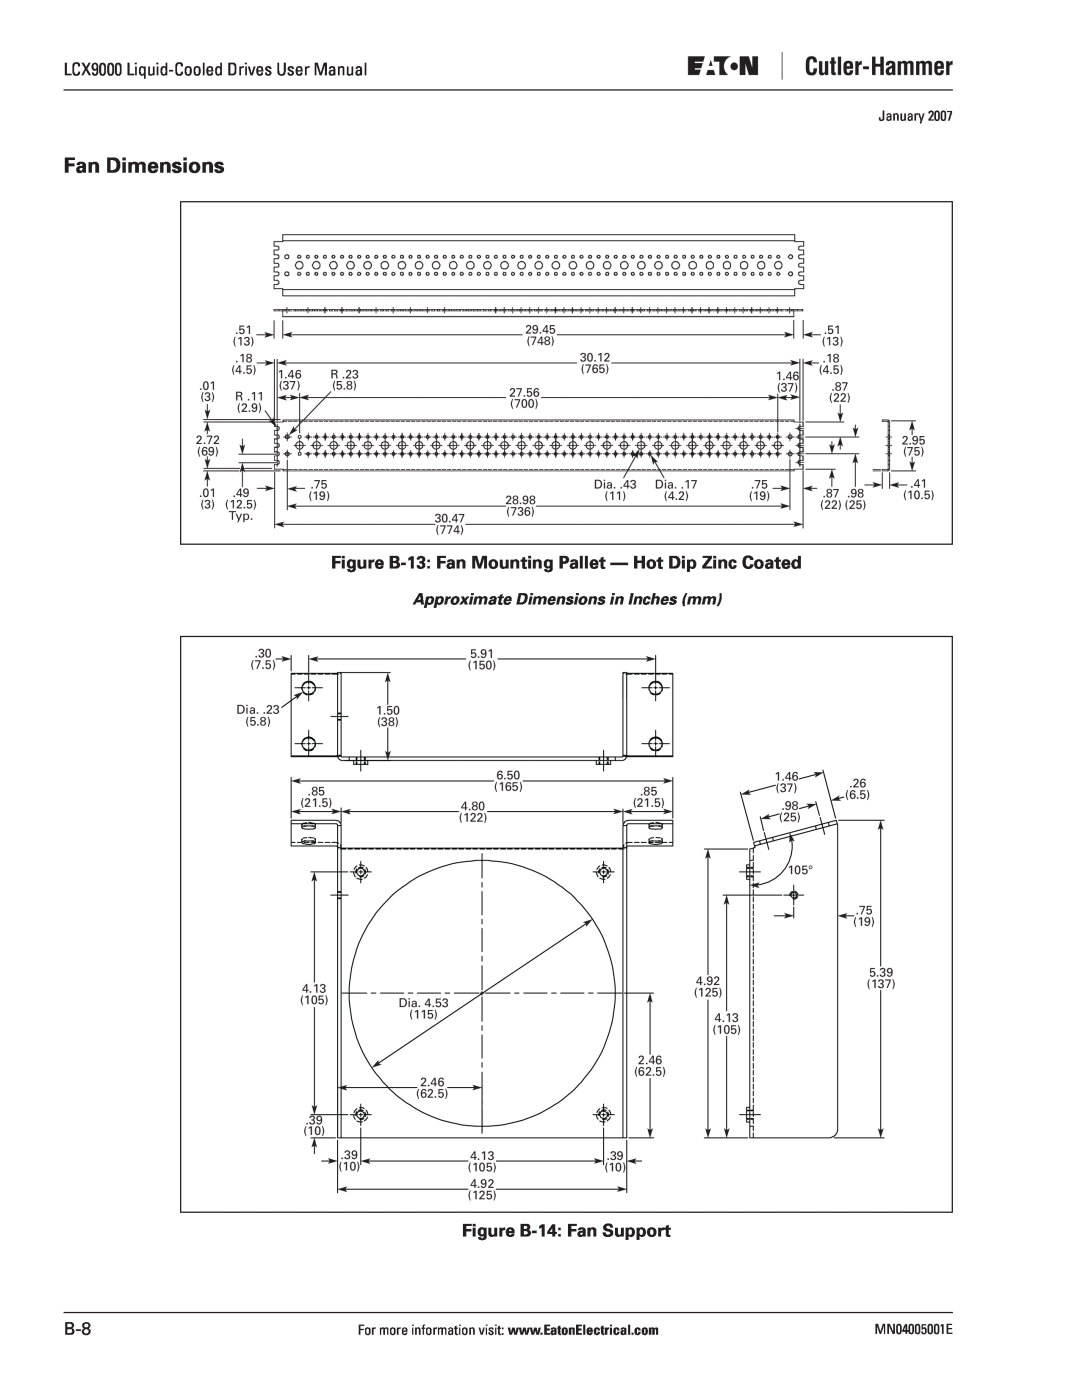 J. T. Eaton LCX9000 Fan Dimensions, Figure B-13 Fan Mounting Pallet - Hot Dip Zinc Coated, Figure B-14 Fan Support 